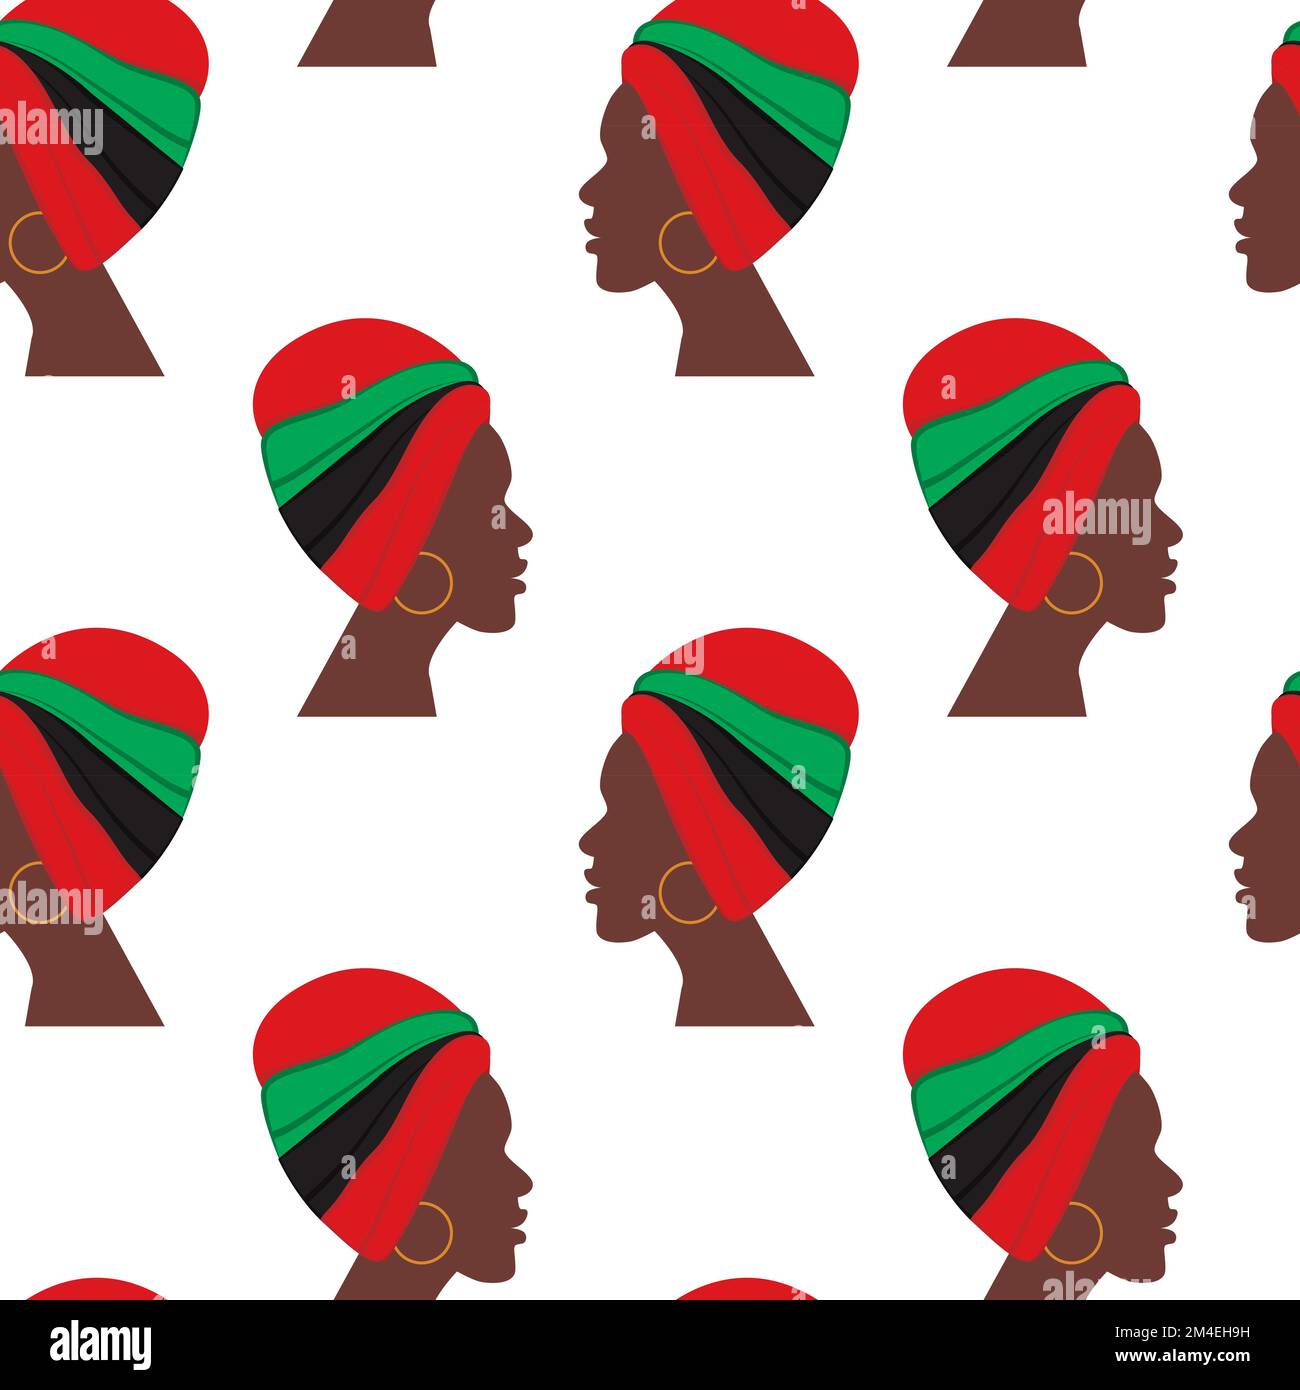 Le modèle sans couture du profil de la femme africaine avec le turban dans les teintes nationales tourné de manière différente. Texture répétitive abstraite. Isoler. Idéal pour les affiches, les bannières, les brochures, les cartes ou les lettres. EPS Illustration de Vecteur